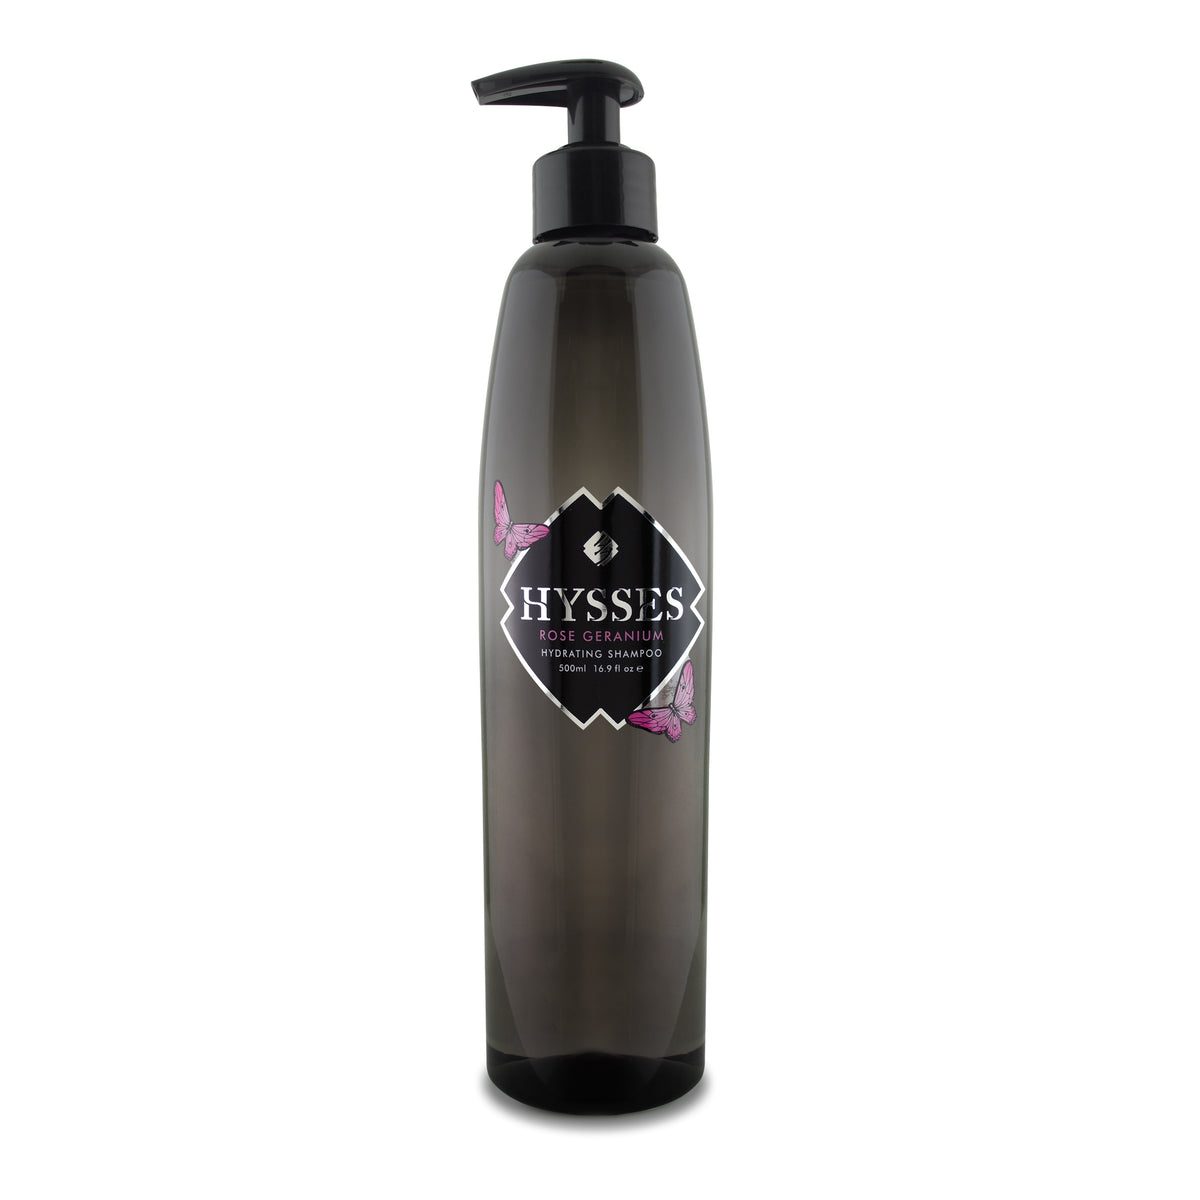 Shampoo Rose Geranium - HYSSES